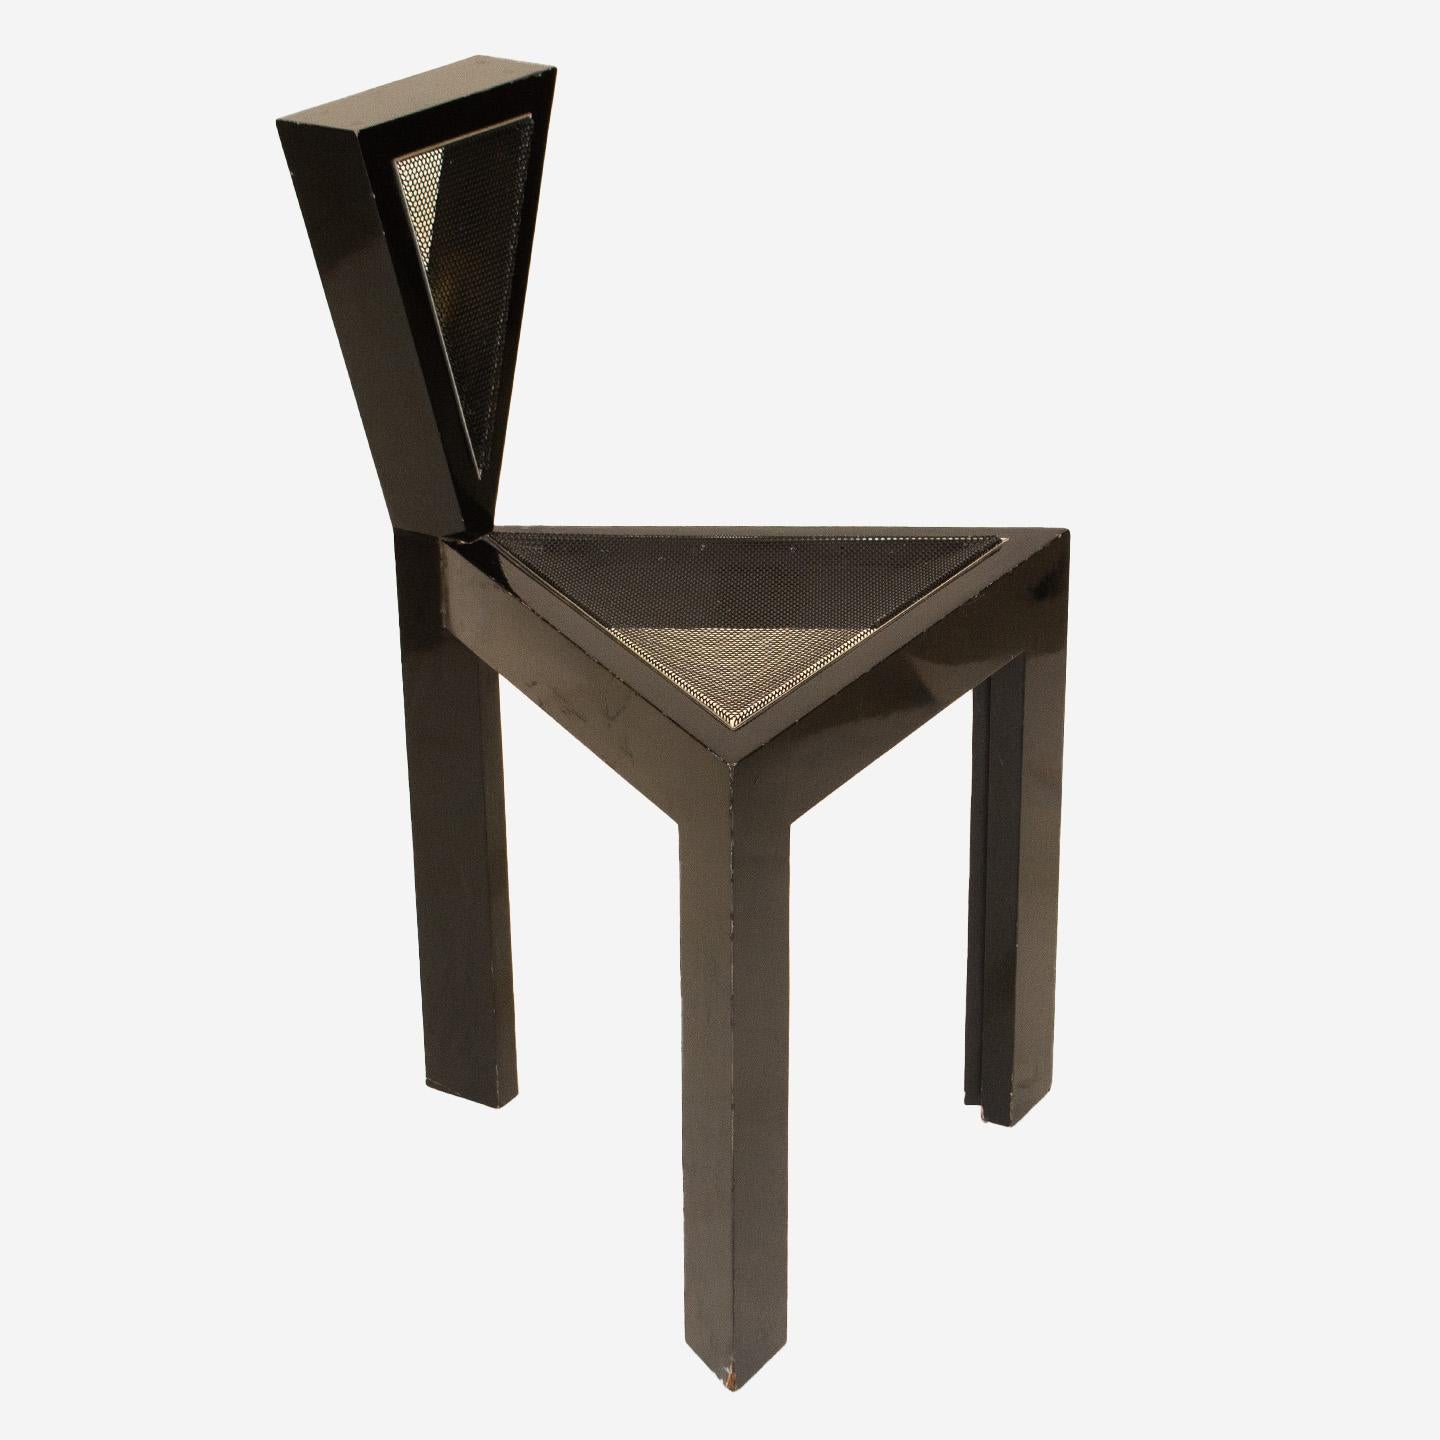 Dieser einzigartige Stuhl im Memphis-Stil ist ein einzigartiger, experimenteller Prototyp. Er wurde vom Möbeldesigner Carl Tese entworfen und hergestellt und besteht aus lackiertem Holz, poliertem Aluminium und einem Sitz aus lackiertem Stahlnetz.